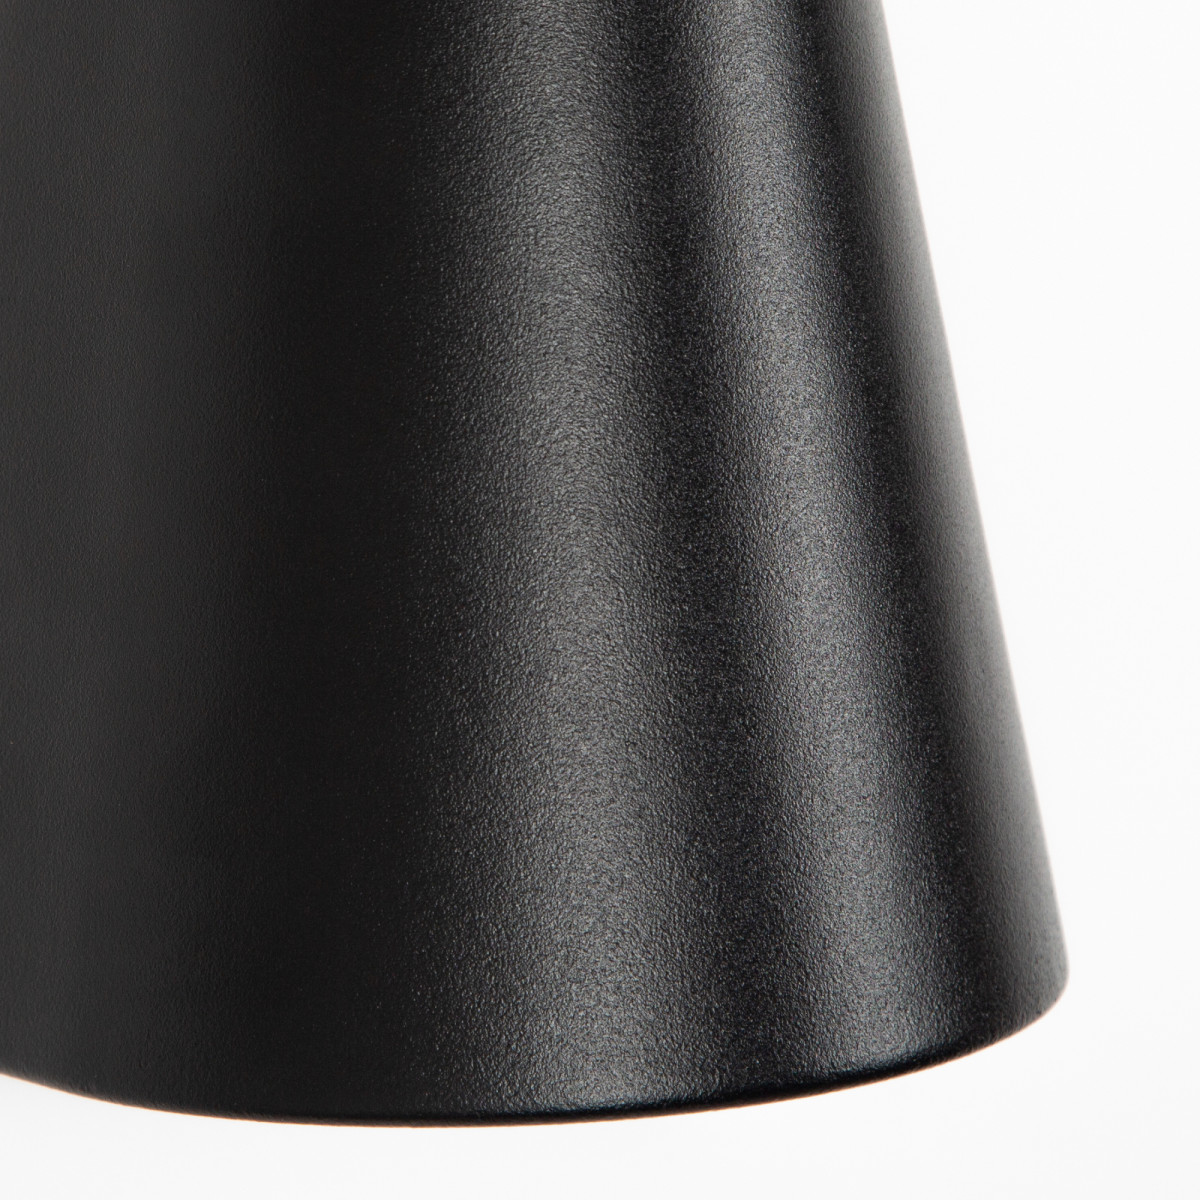 Wandspot Cone up & downlighter zwart, moderne wandverlichting voor buiten, buitenverlichting van KS Verlichting, conisch vormgegeven gevelspot